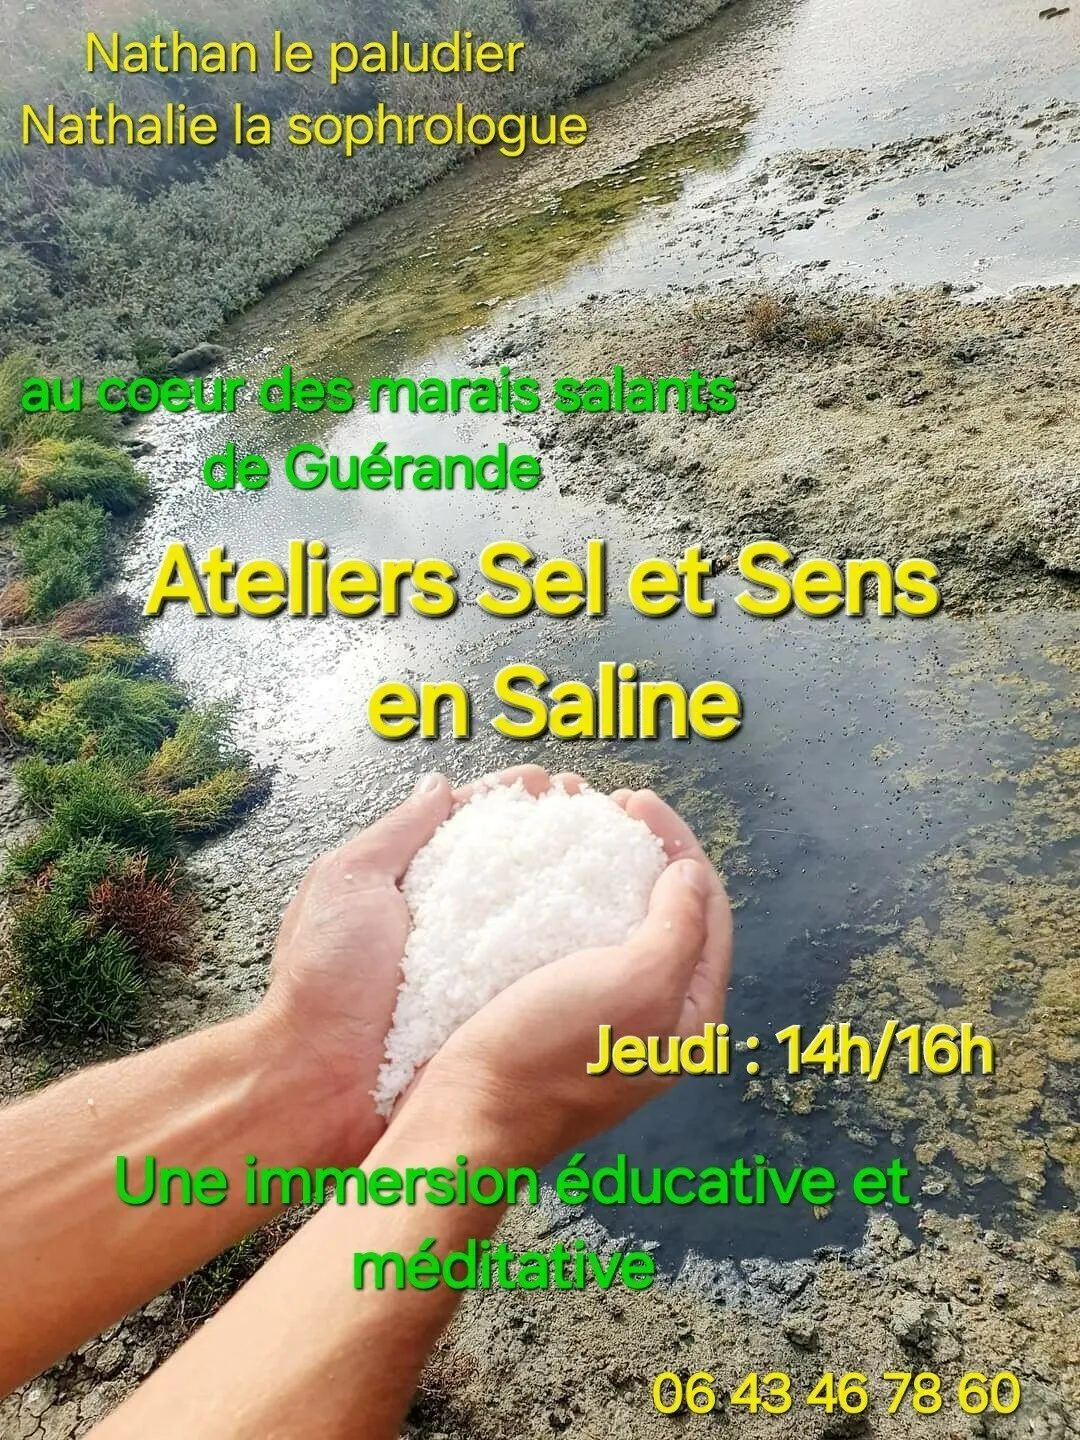 Image qui illustre: Atelier - Sel et sens en saline à Guérande - 0